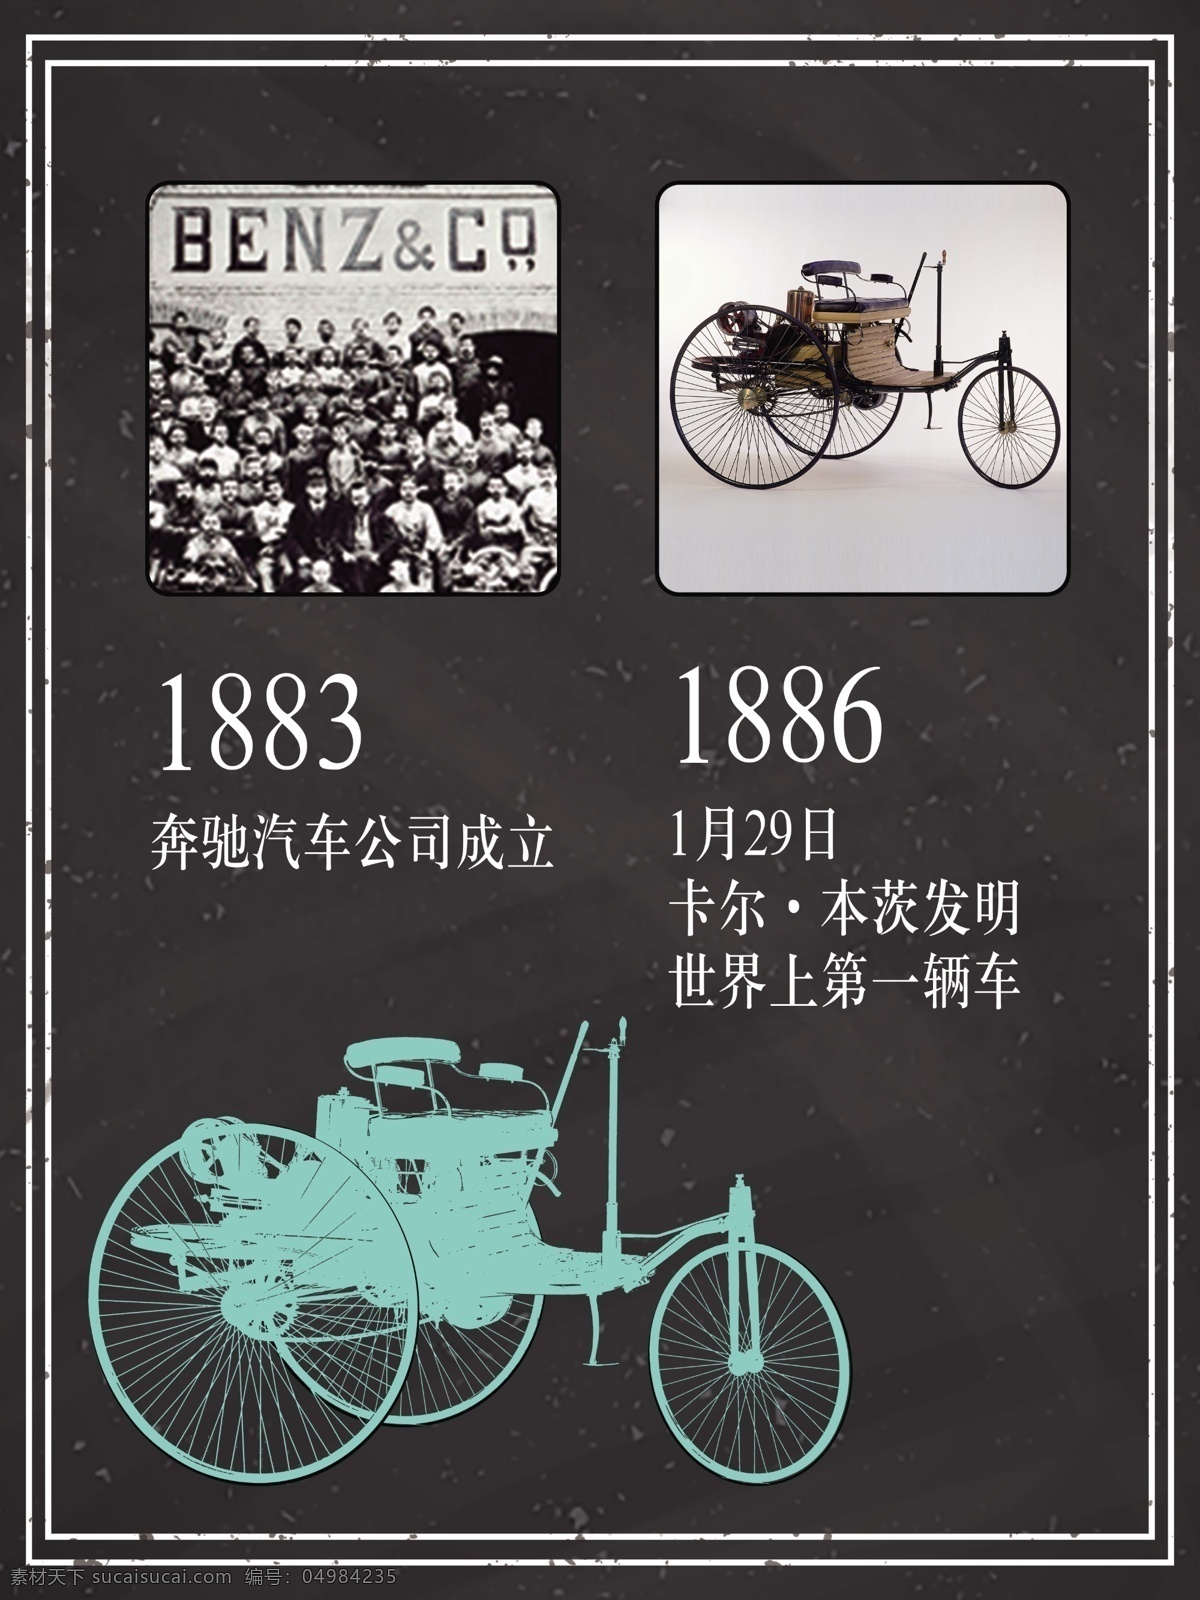 奔驰成立 奔驰 汽车 公司 戴姆勒 梅赛德斯 世界第一辆车 文化艺术